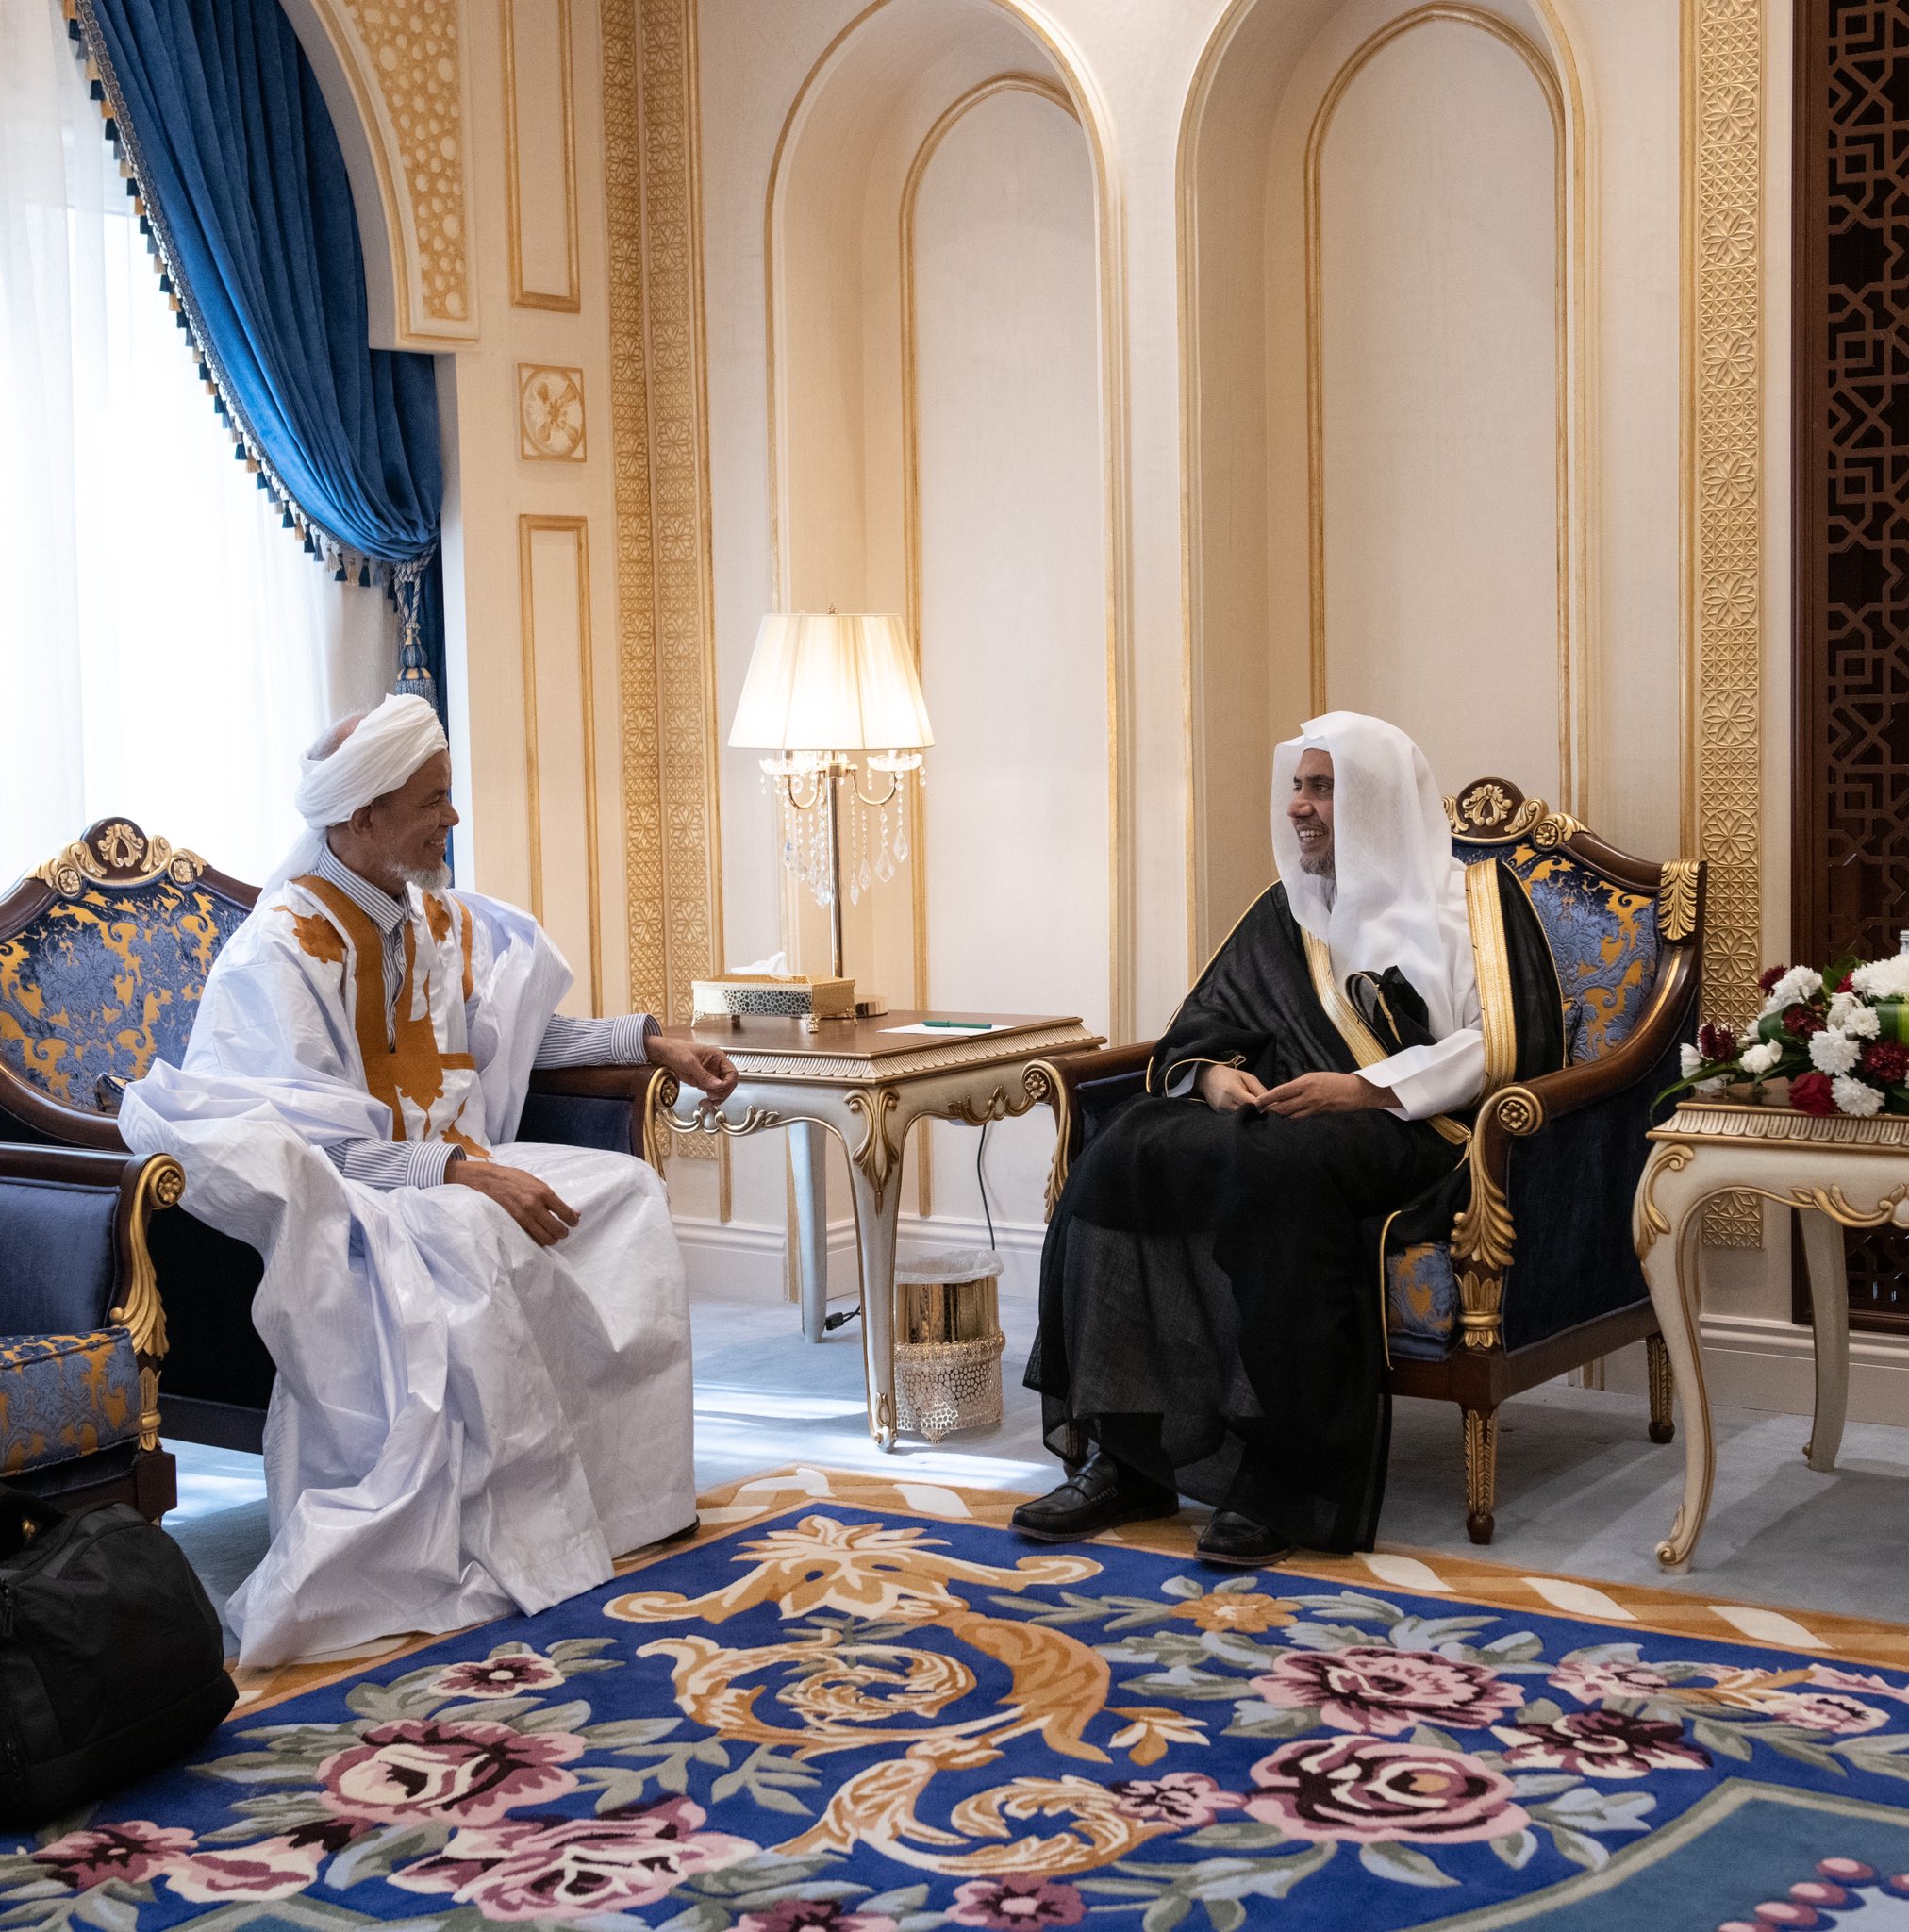 عزت مآب شیخ ڈاکٹر محمد العیسی نے صدر علمائے افریقہ فورم شیخ ڈاکٹر محمد حافظ النحوی کا استقبال کیا